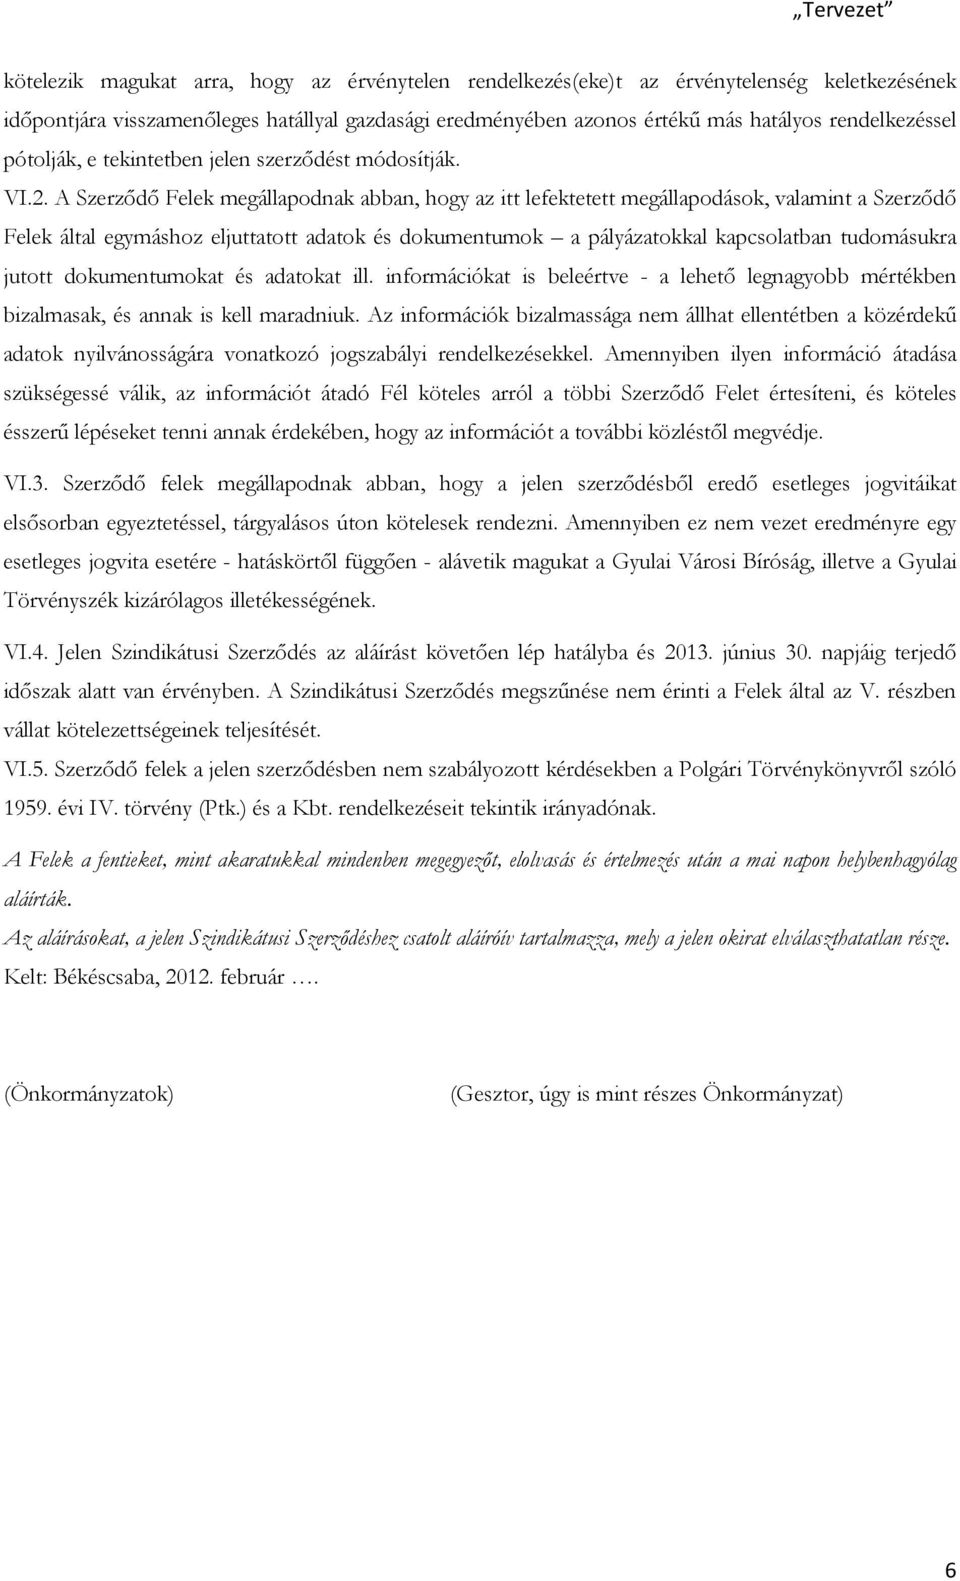 A Szerzıdı Felek megállapodnak abban, hogy az itt lefektetett megállapodások, valamint a Szerzıdı Felek által egymáshoz eljuttatott adatok és dokumentumok a pályázatokkal kapcsolatban tudomásukra